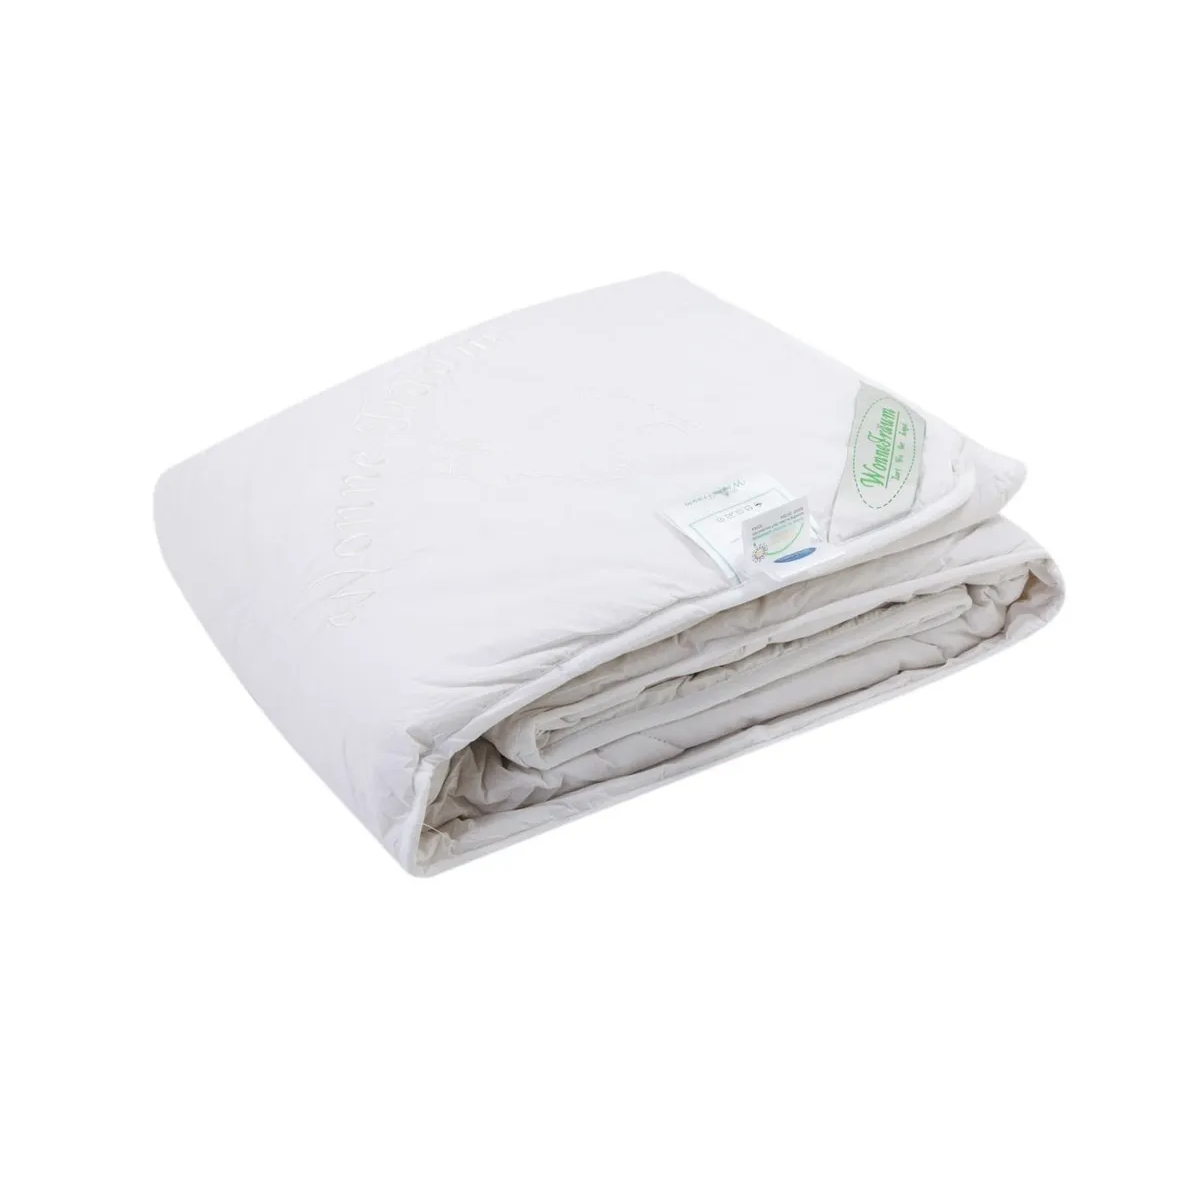 Одеяло шерстяное Wonne Traum белое 200х220 см (2709-26241) одеяло шерстяное wonne traum кремовое 150х210 см 2709 26244